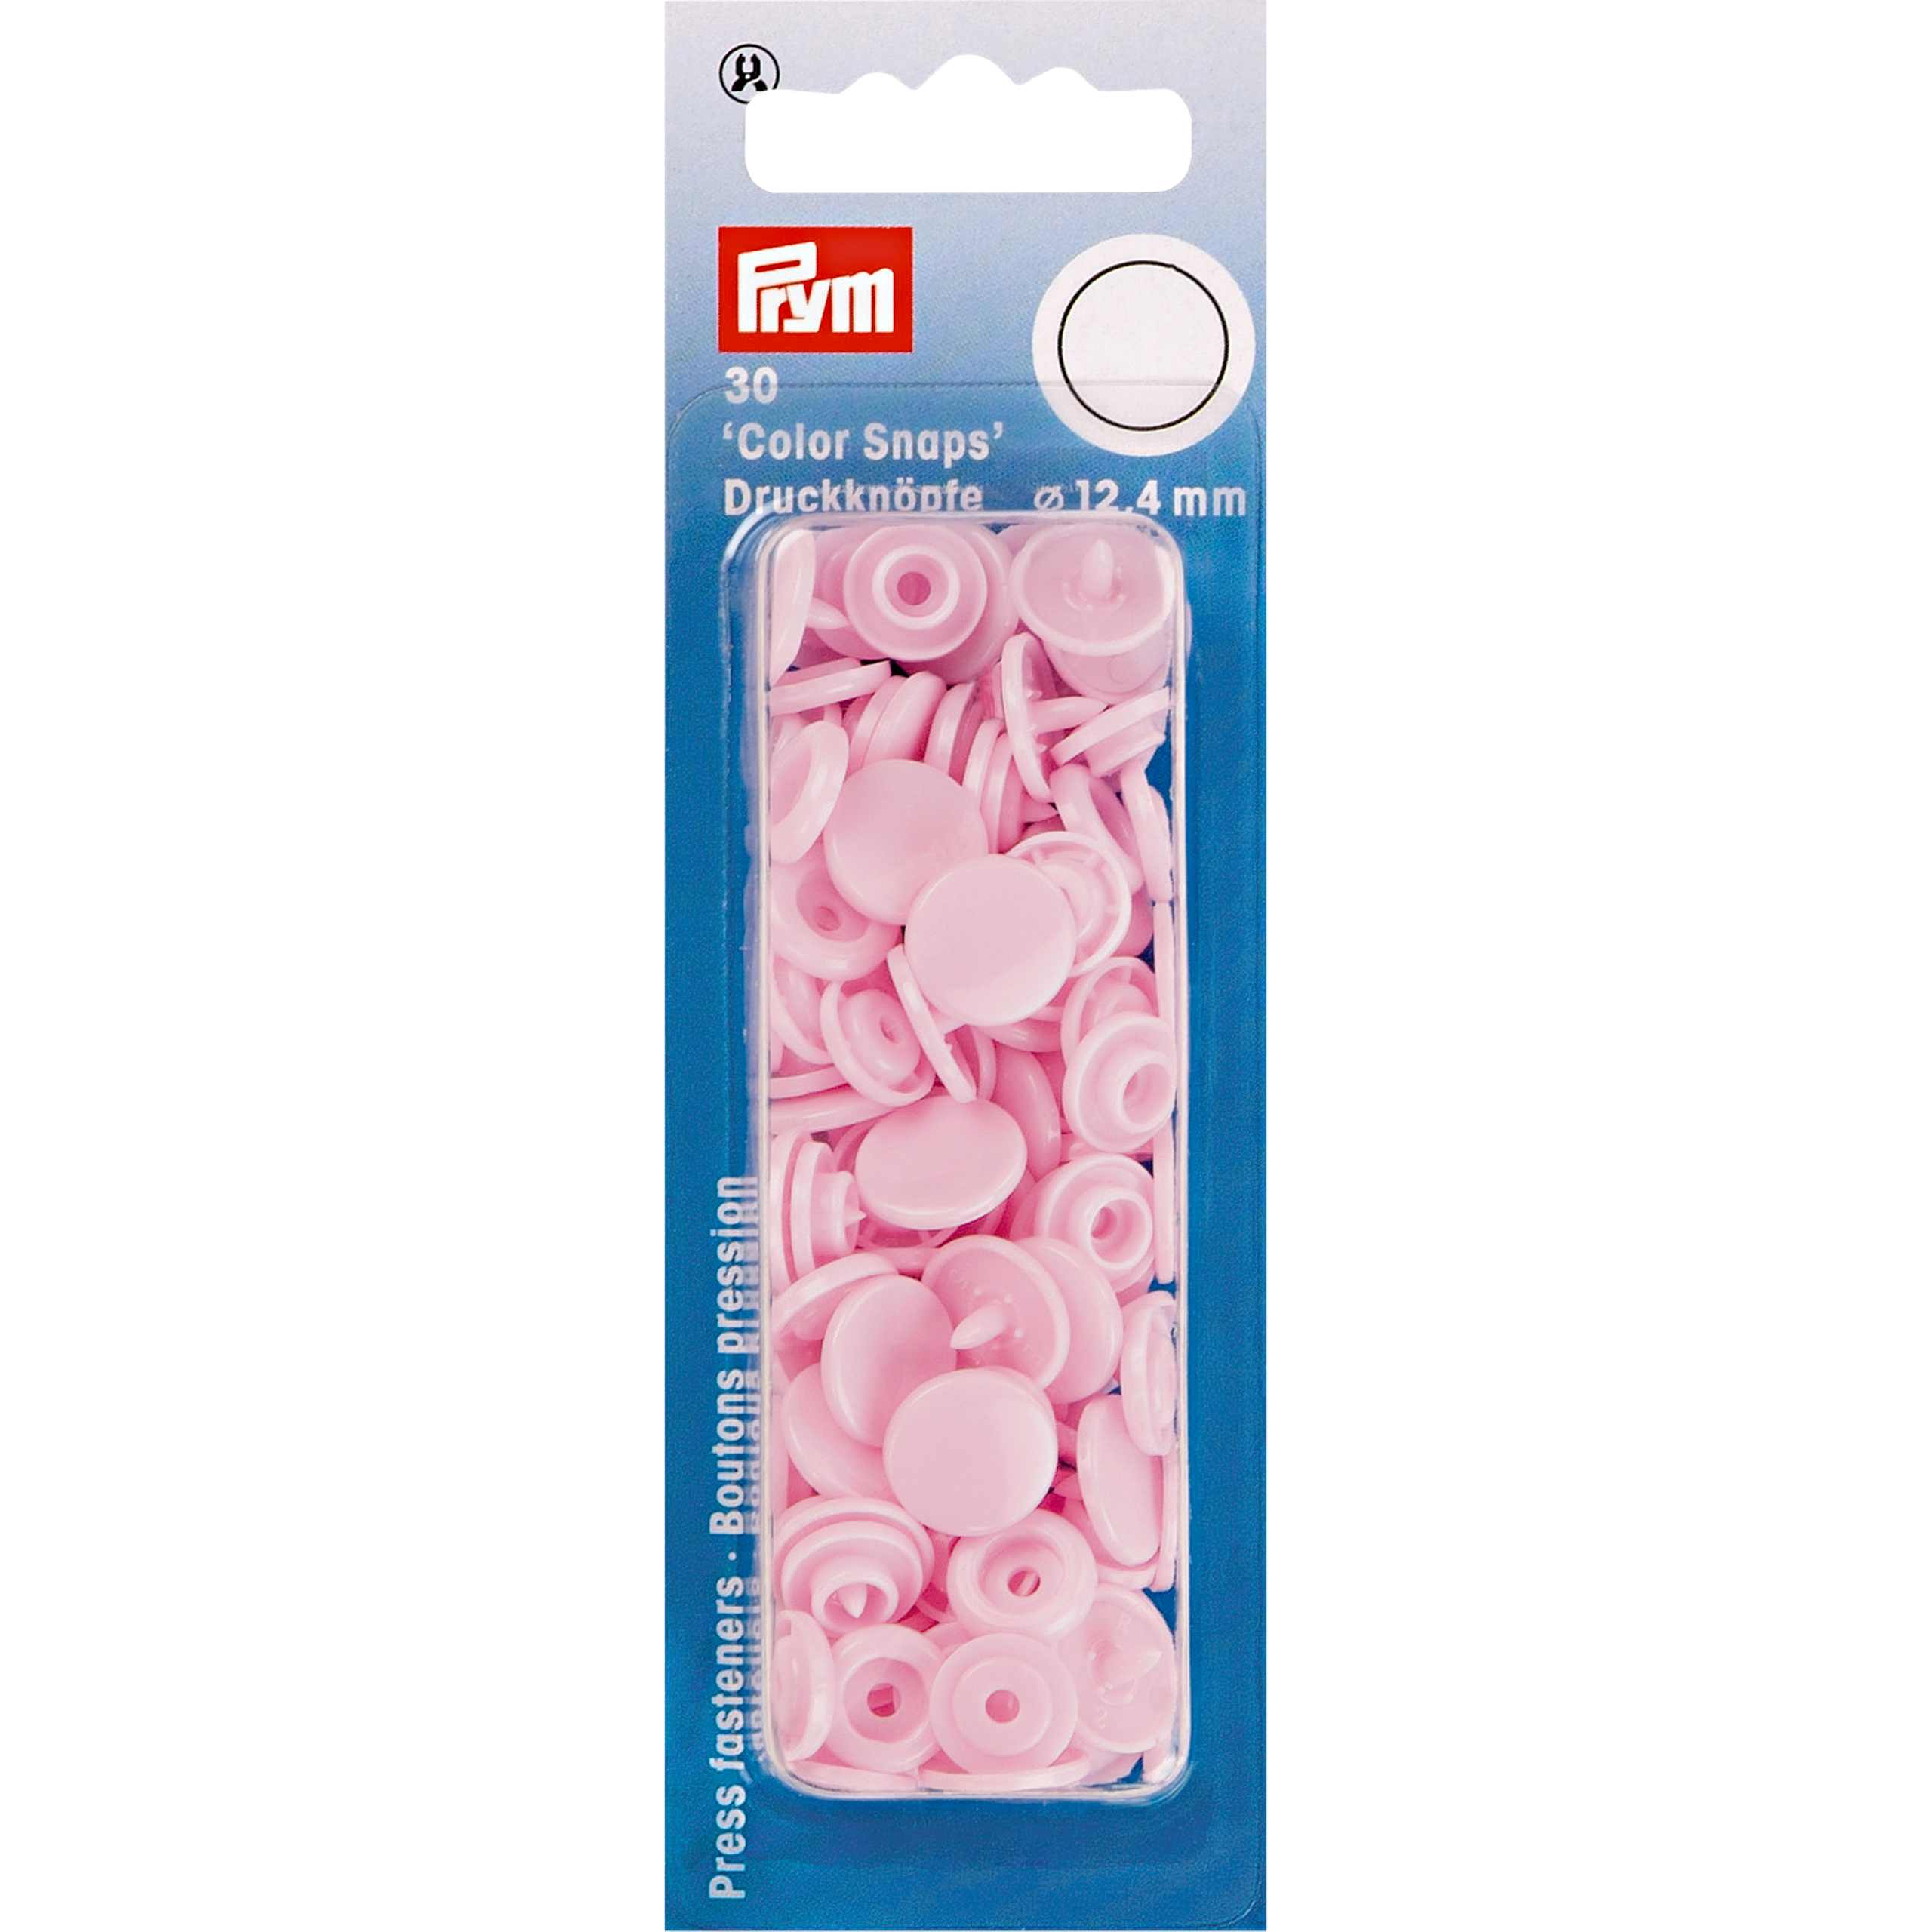 Nähfrei-Druckknöpfe Color Snaps rund 12,4 mm 30 St von Prym rosa